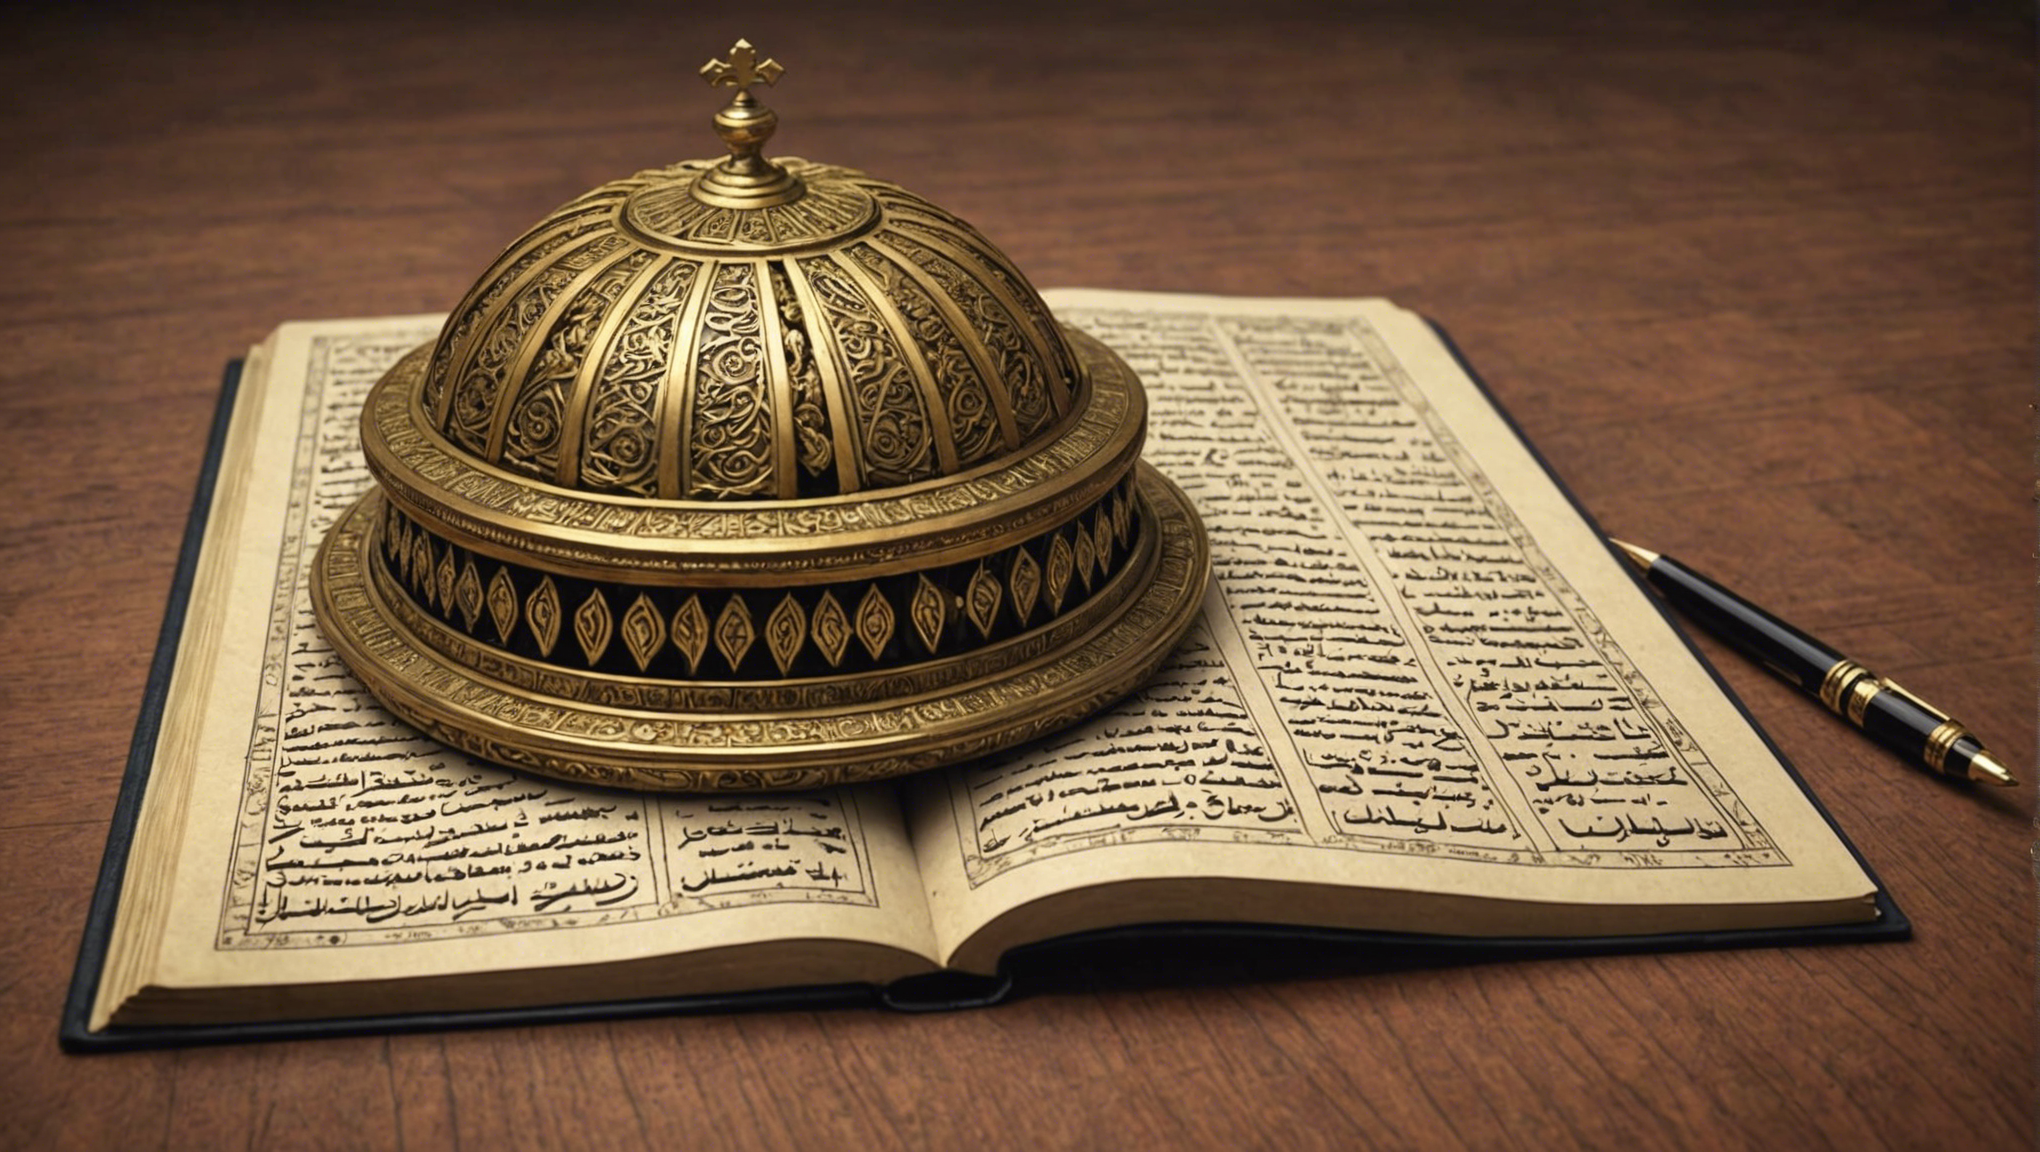 découvrez comment comprendre et interpréter le coran avec nos conseils et astuces. apprenez à analyser le texte sacré de l'islam pour en saisir toute la signification.